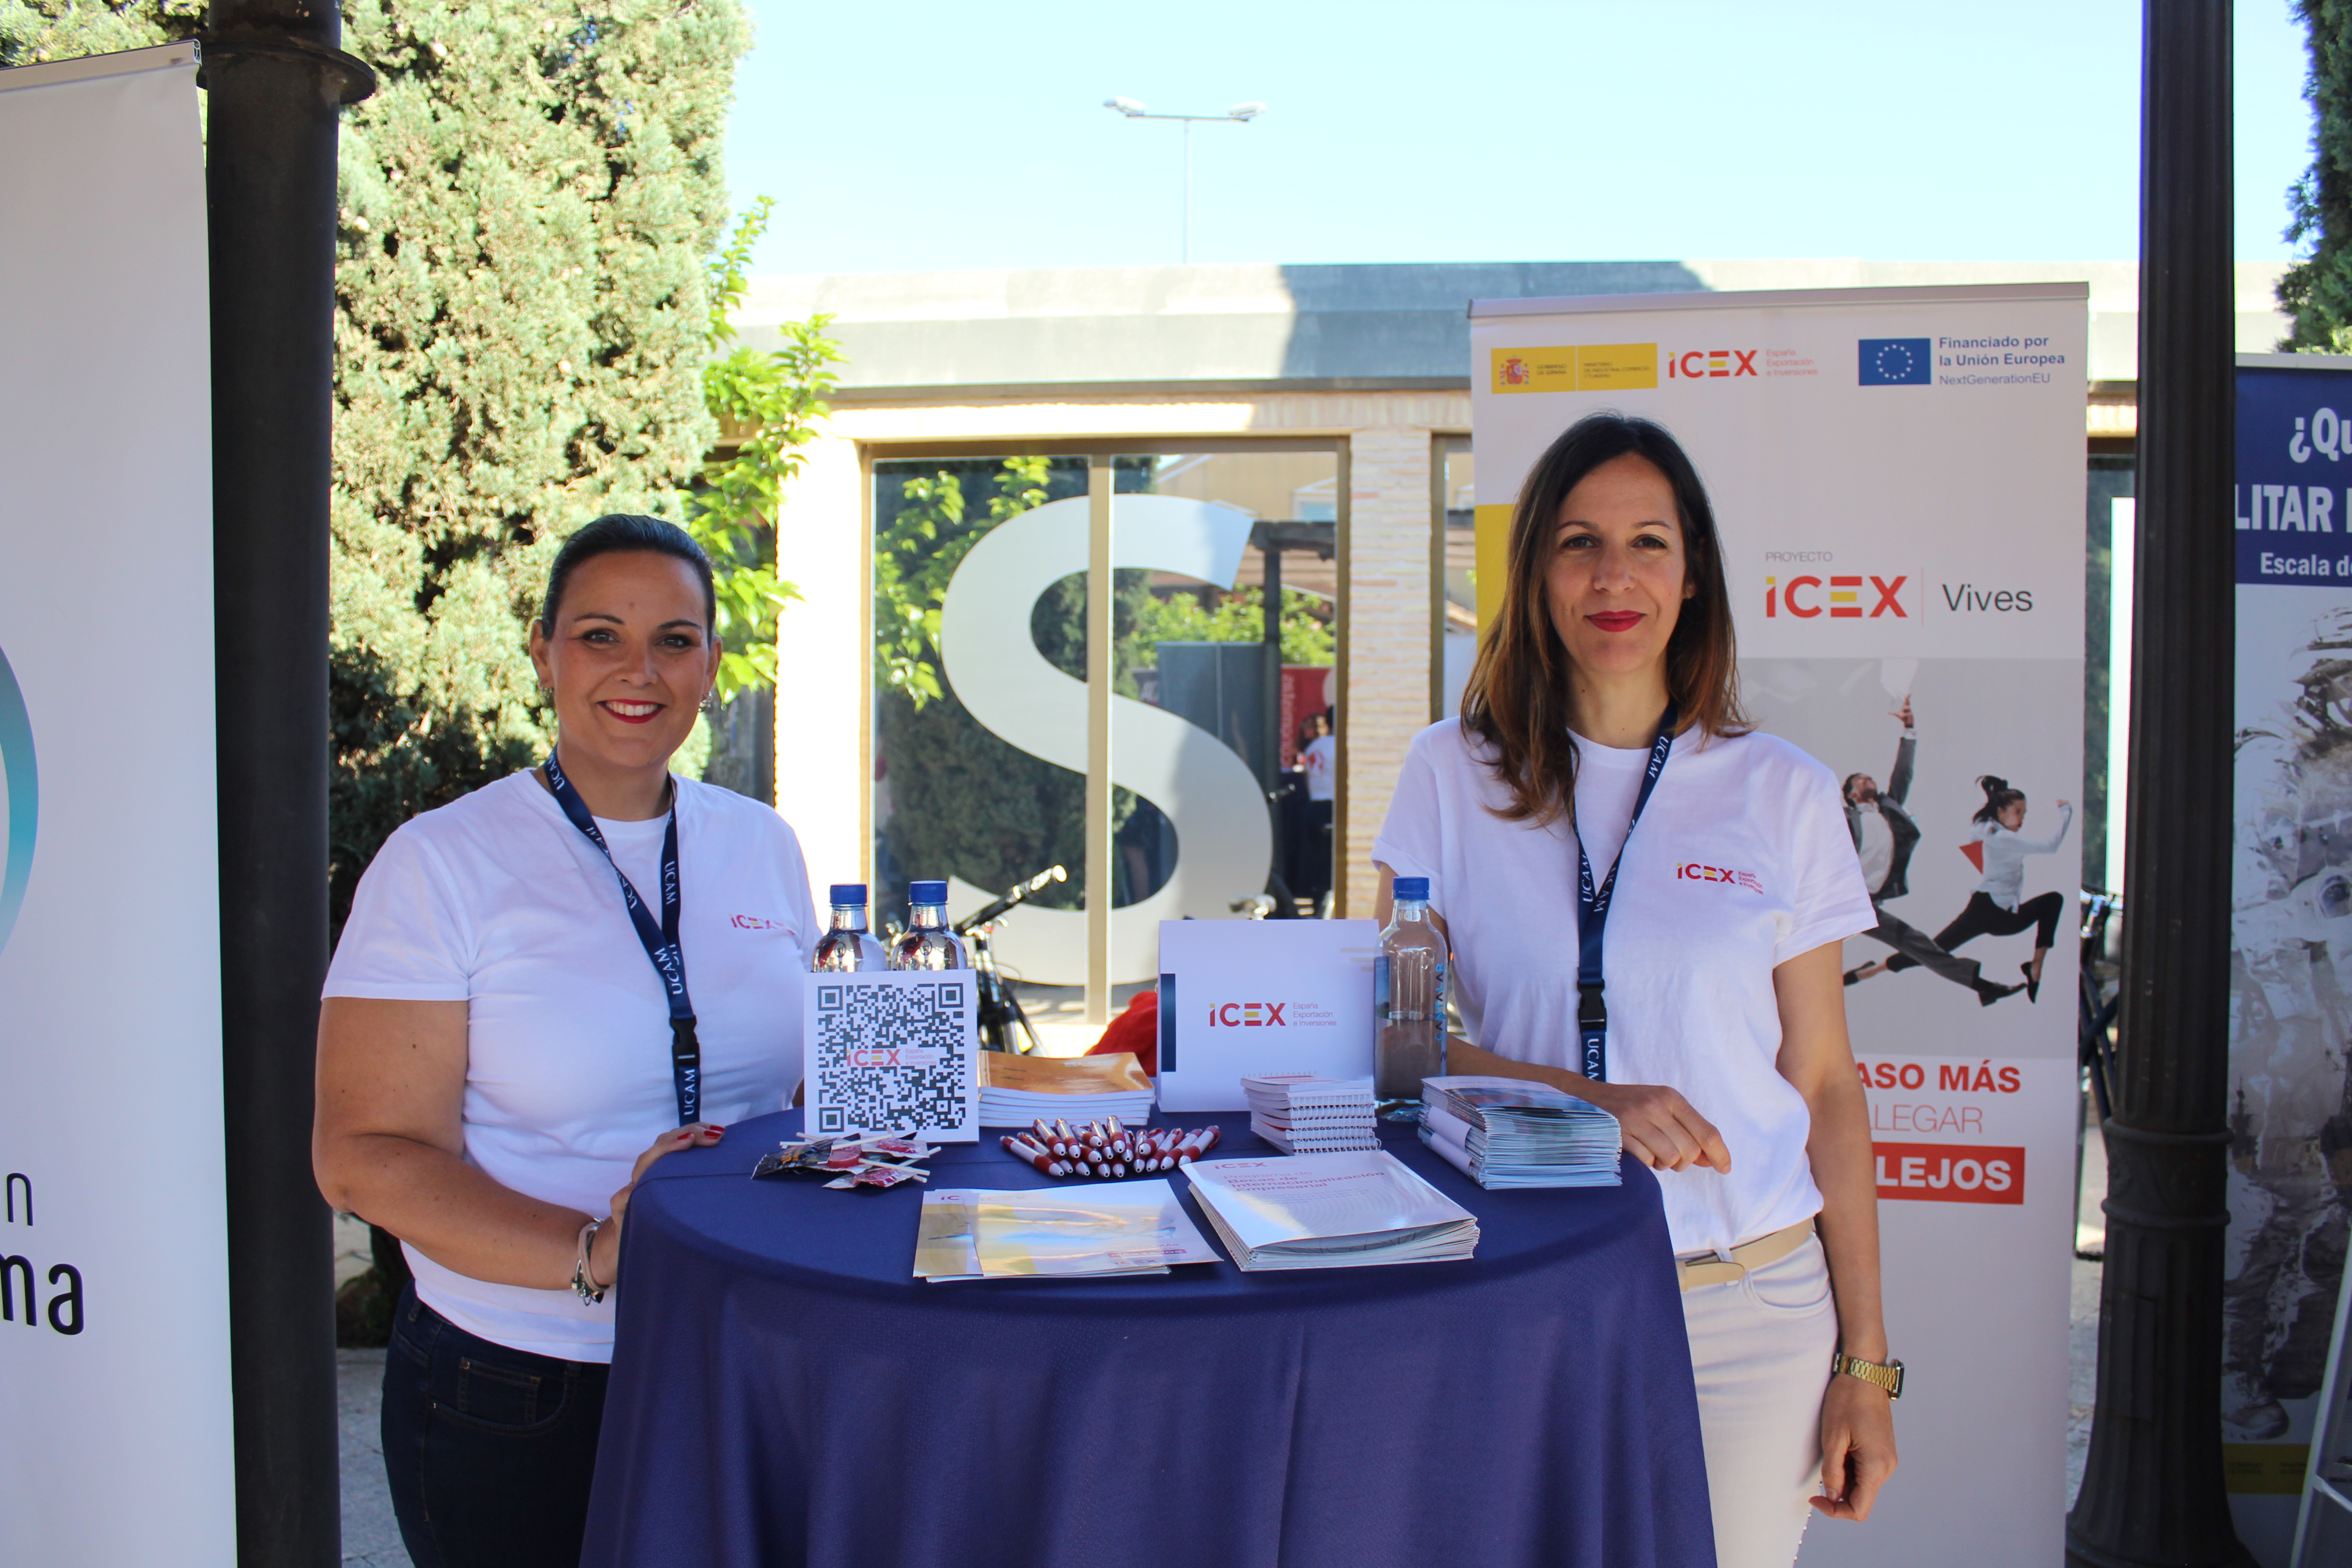 Dos personas de pie tras una mesa alta donde muestran folletes informativos sobre ICEX España Exportación e Inversiones